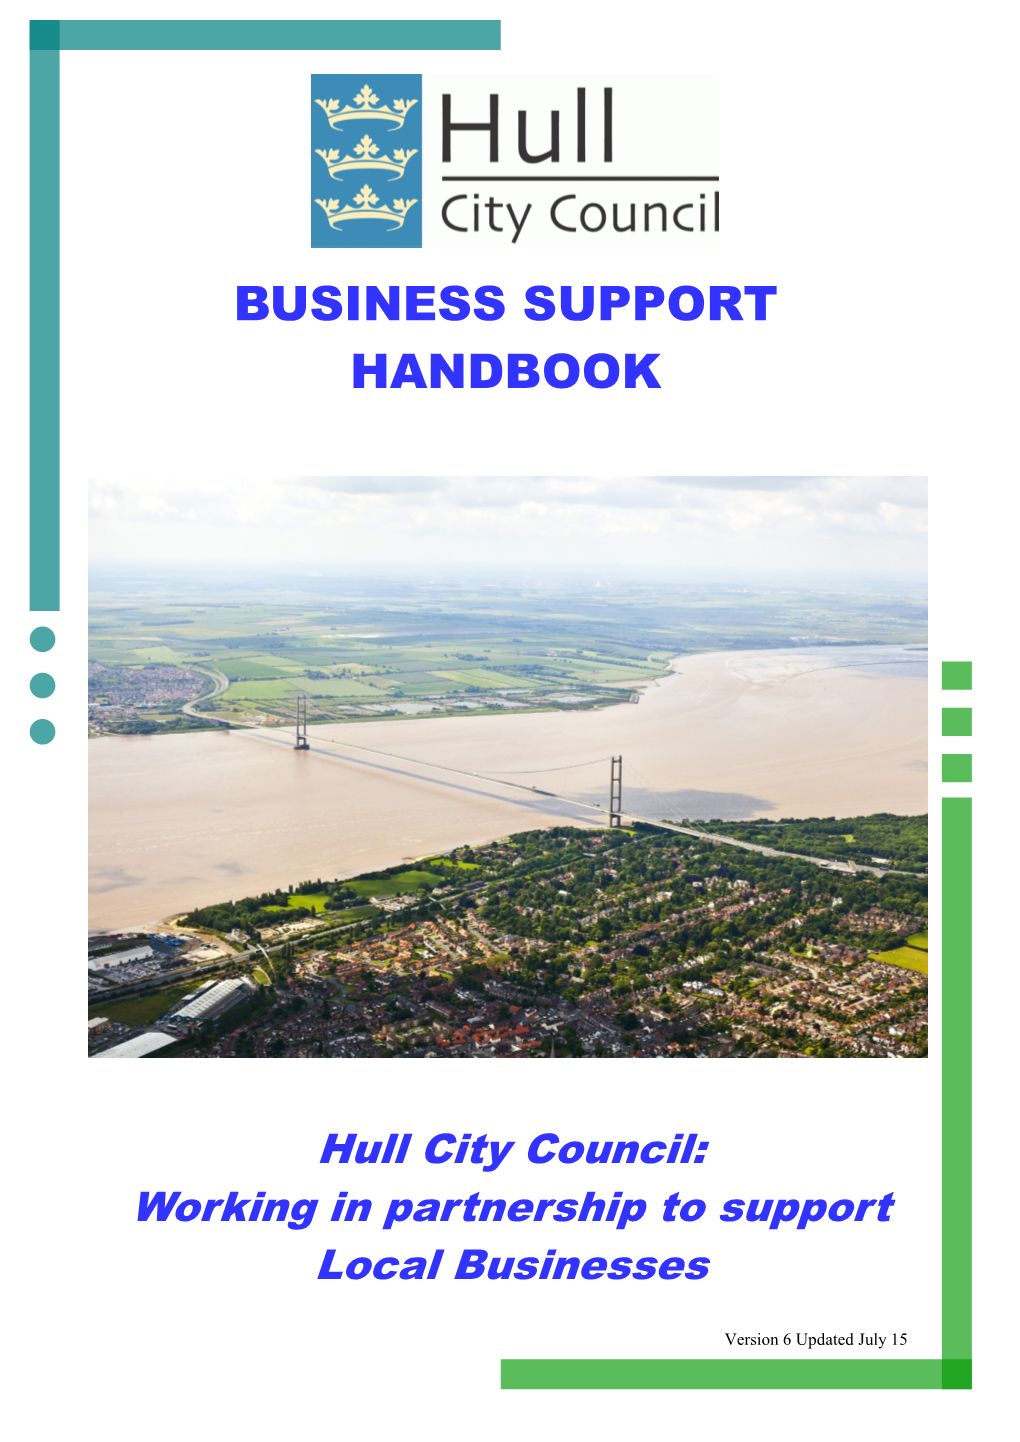 Business Support Handbook